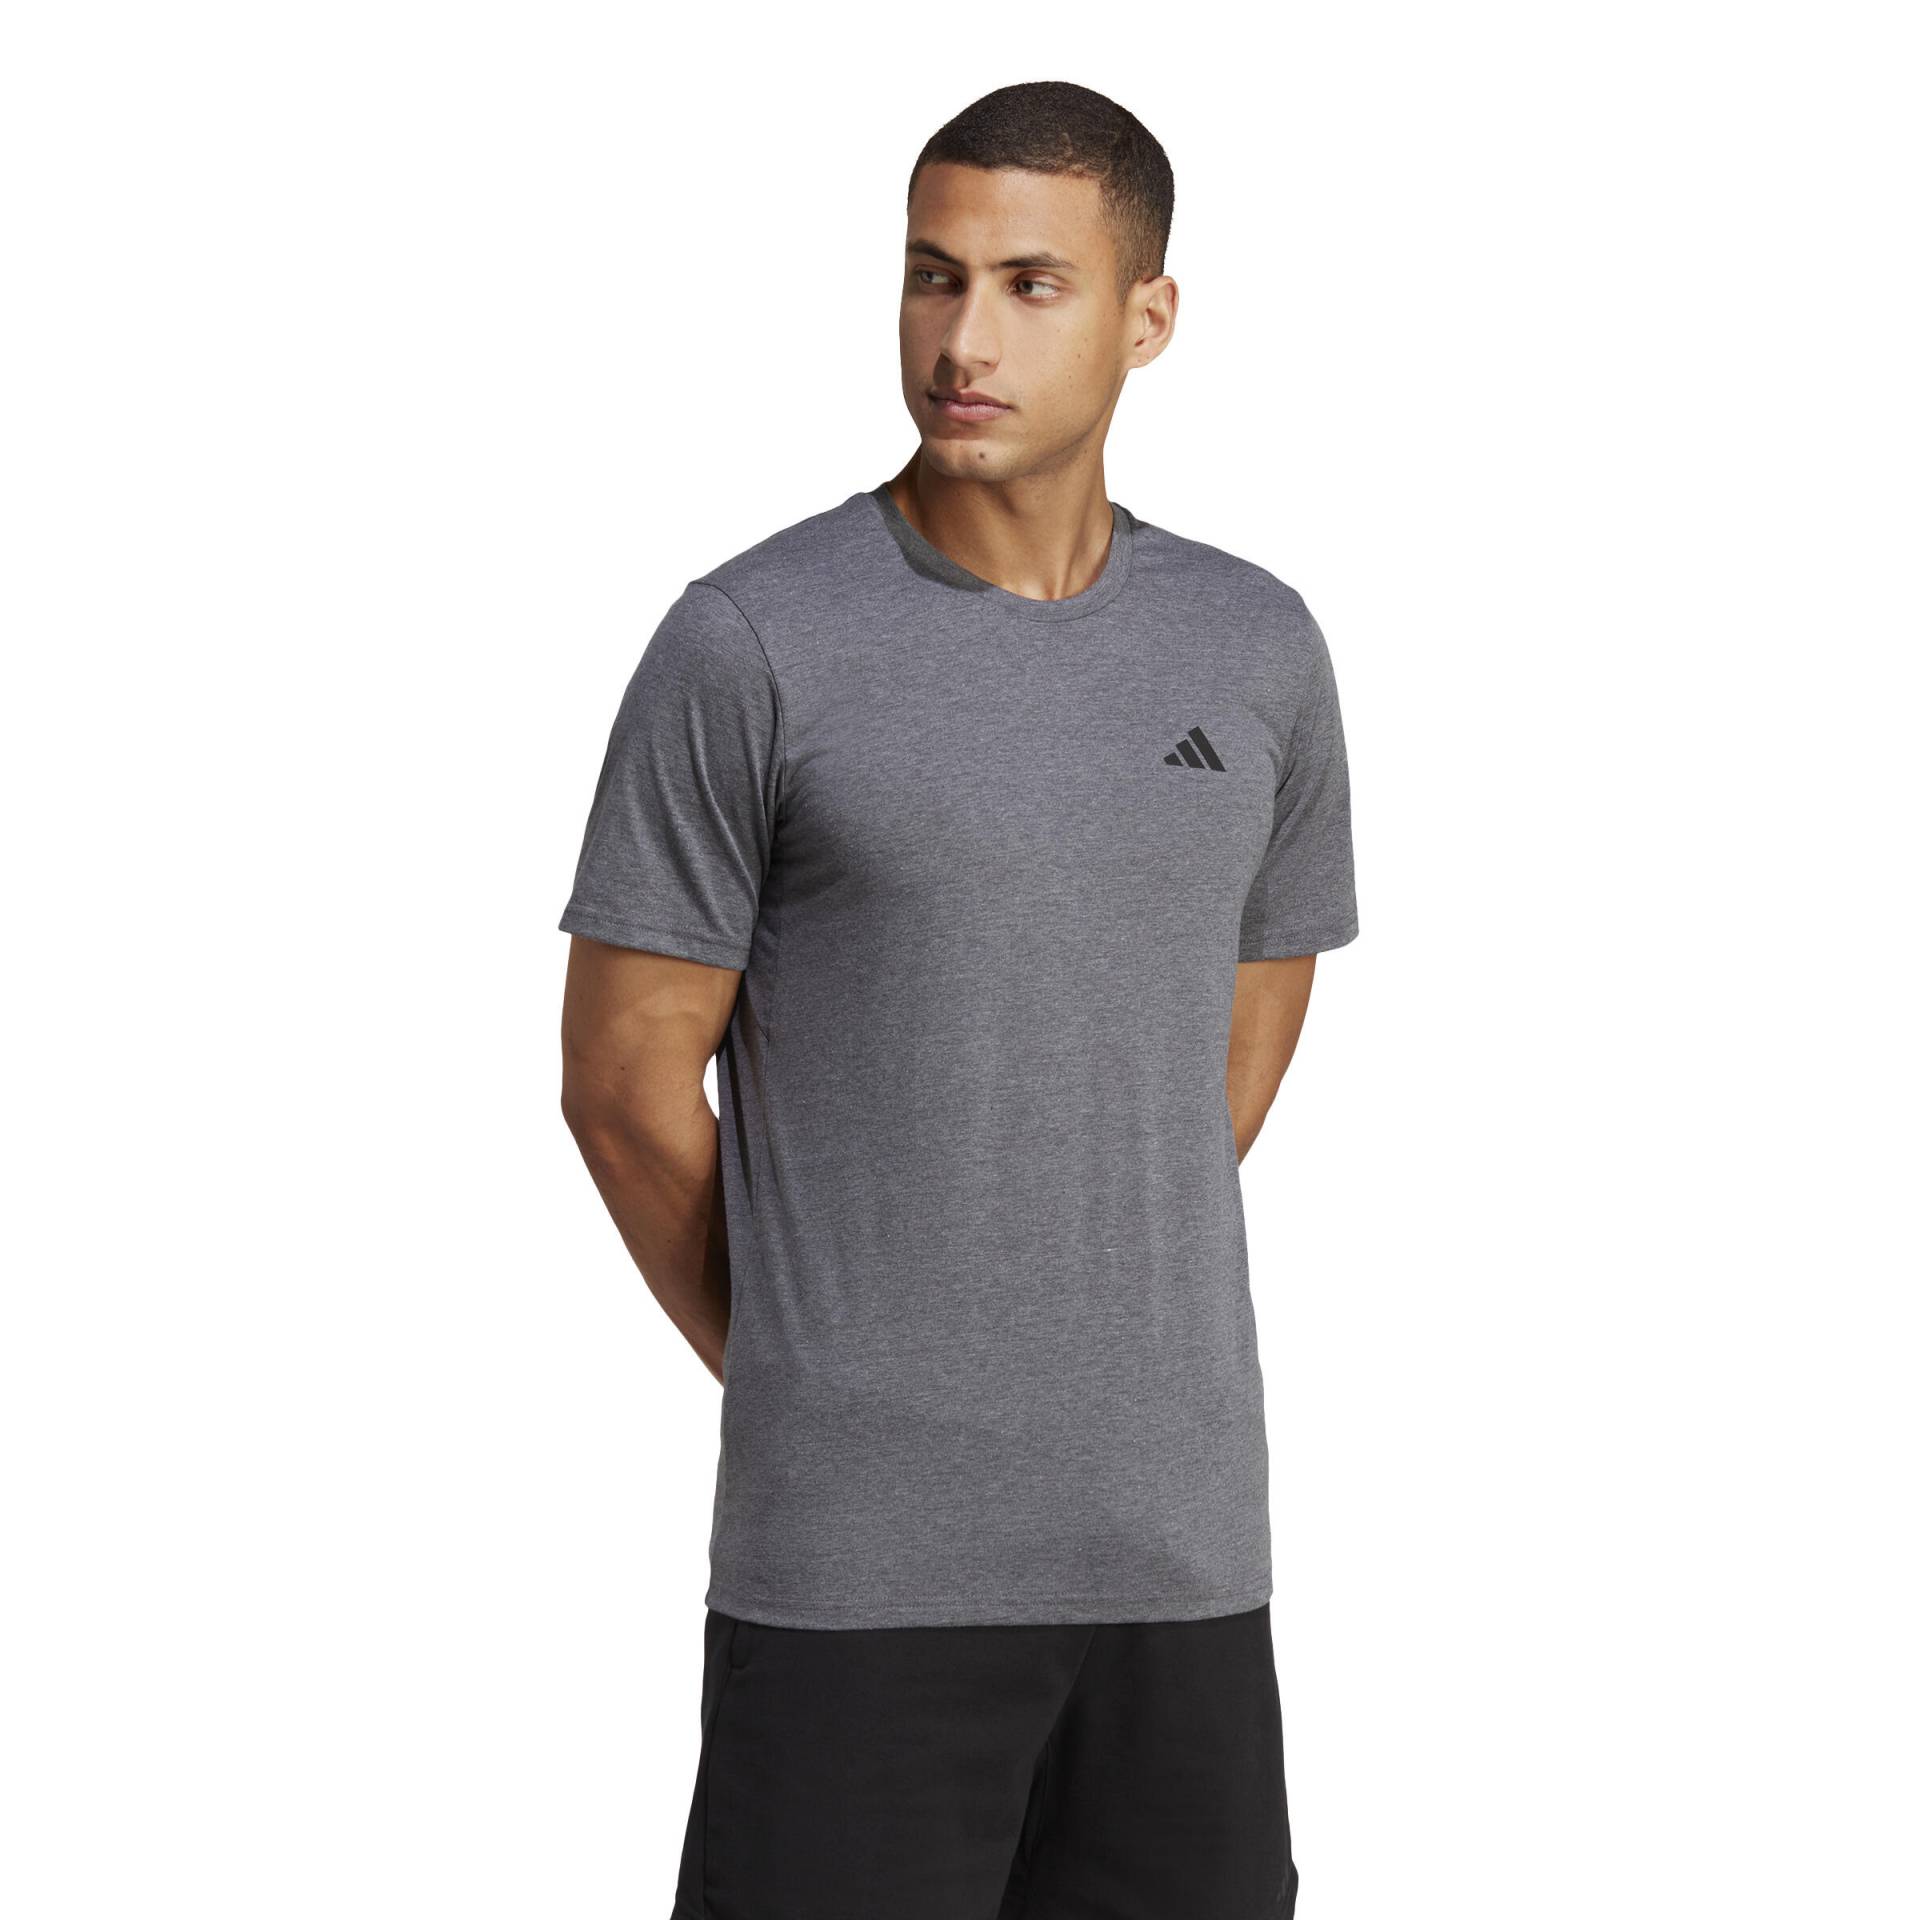 ADIDAS T-Shirt Herren - grau von Adidas